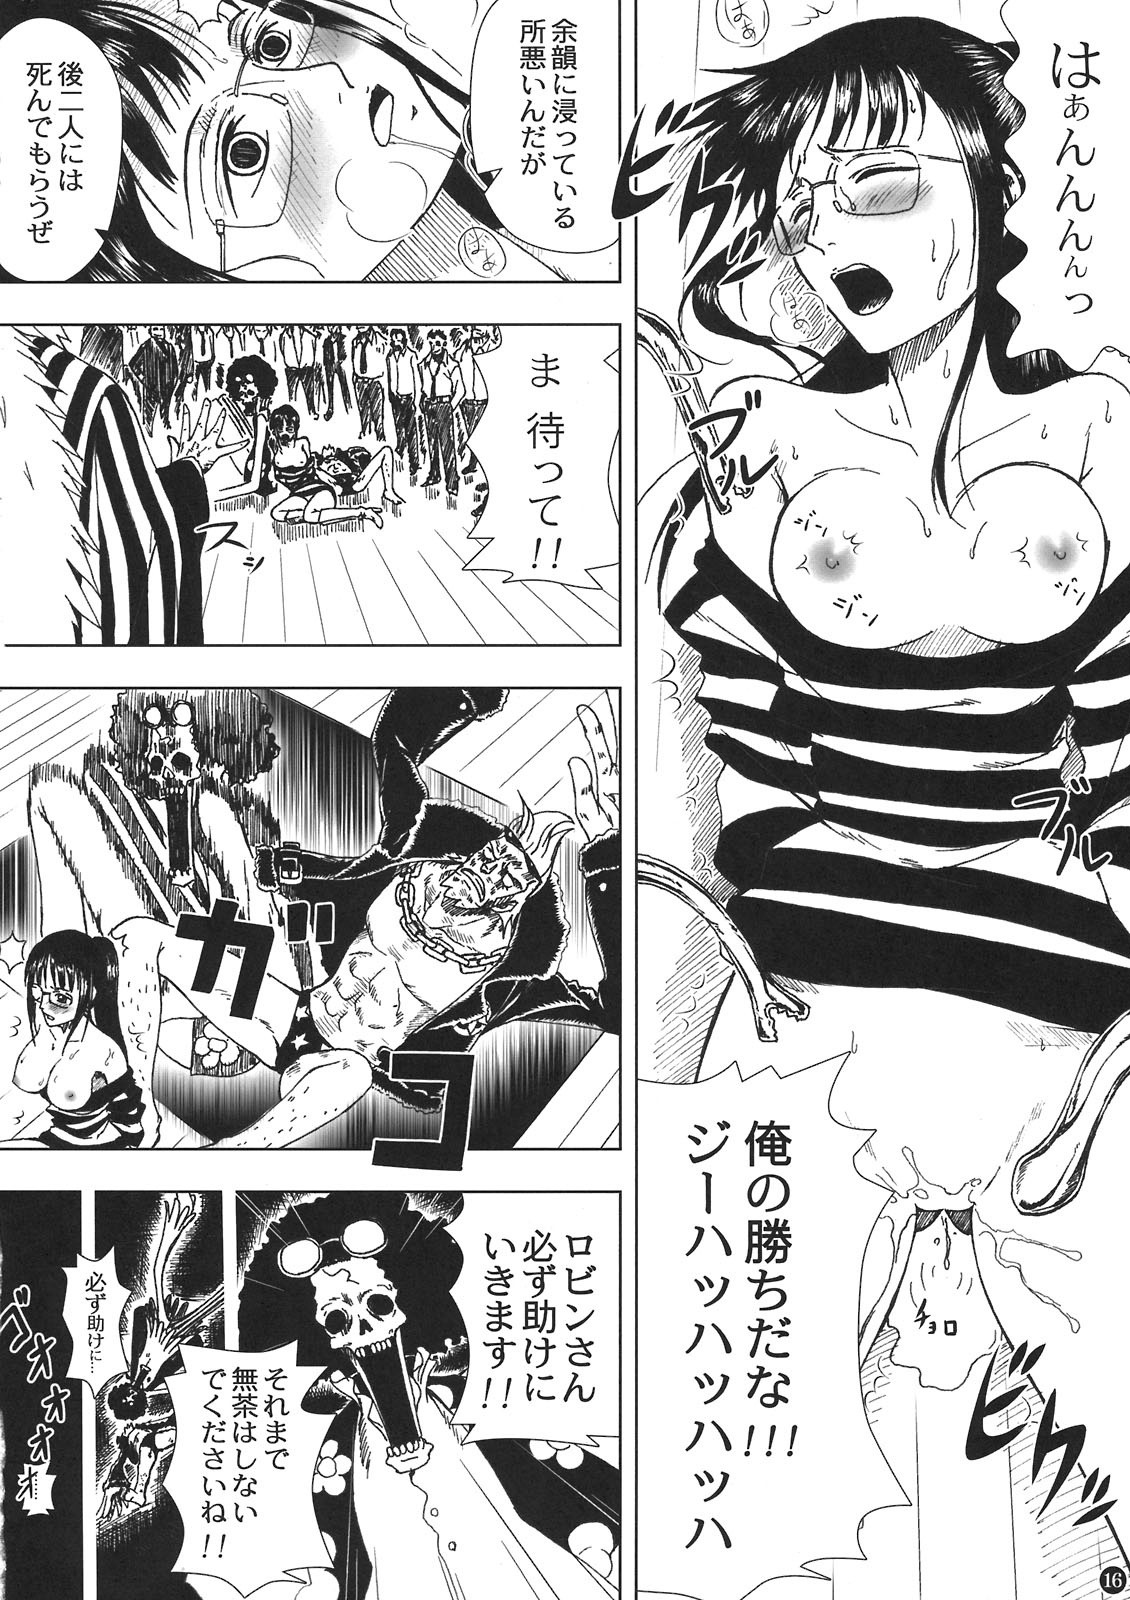 Akuma no Mi no Tsukaikata porn comic picture 16